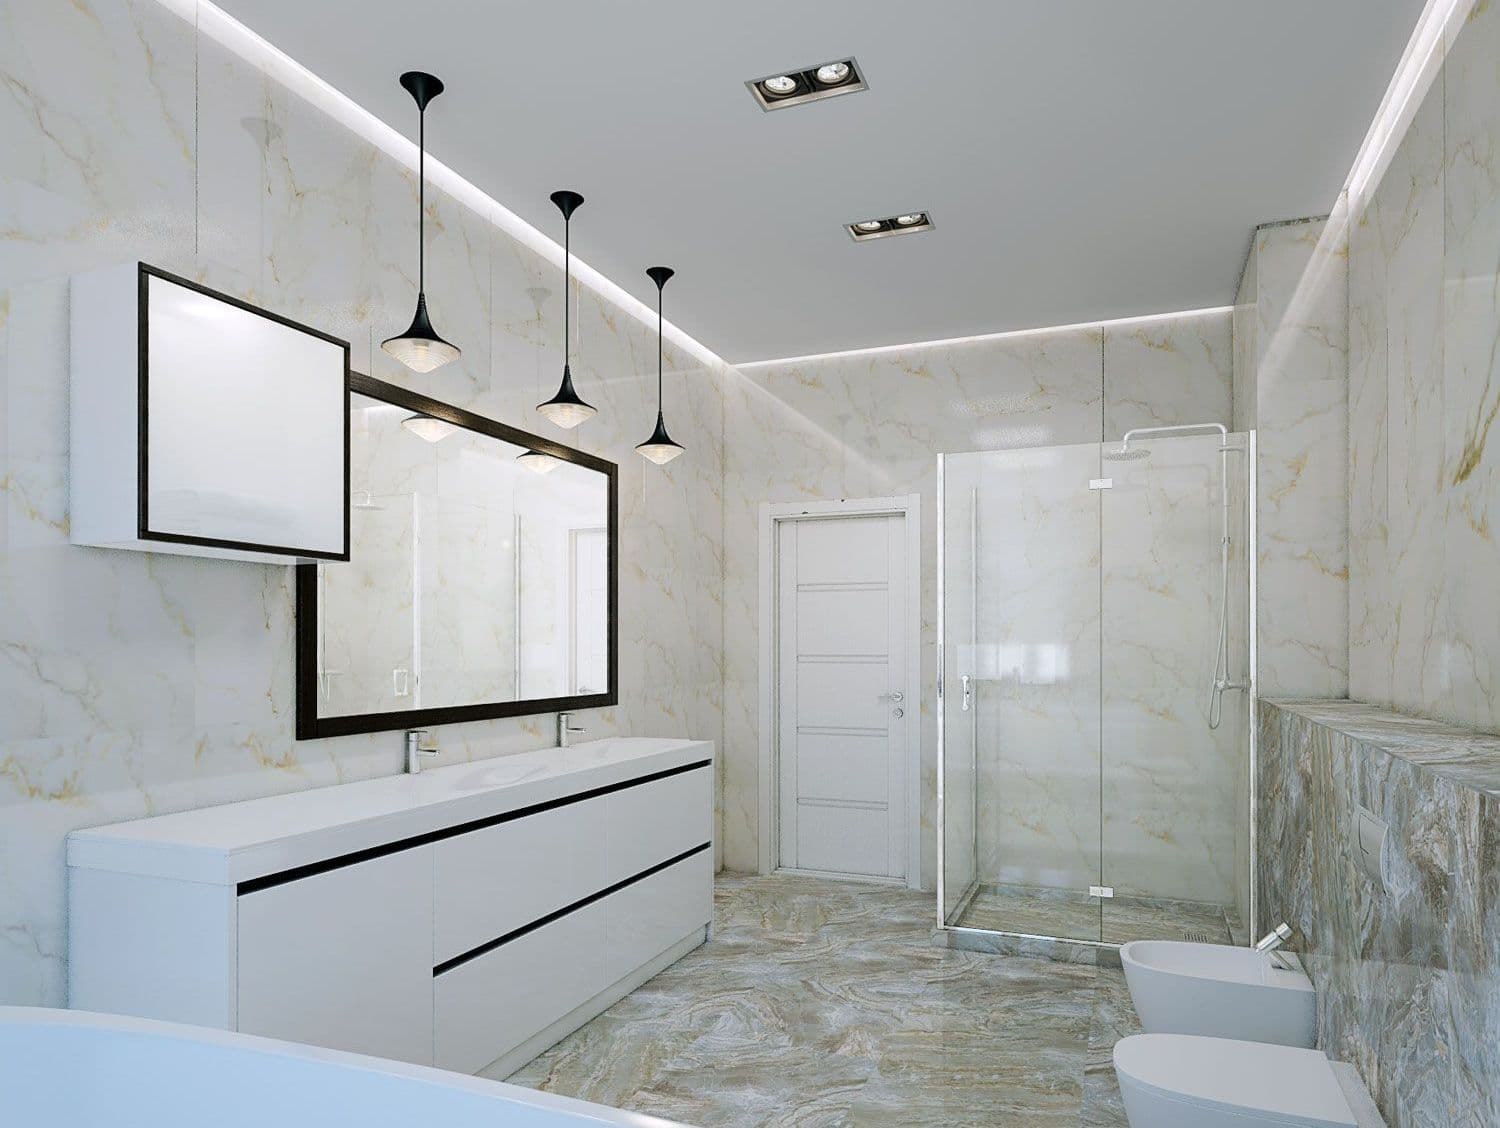 Дизайн ванной комнаты с унитазом, биде, двойной раковиной, белой мебелью, ванной на подиуме, душем со стеклянной перегородкой, плиткой под мрамор, декоративной подсветкой, вид 2